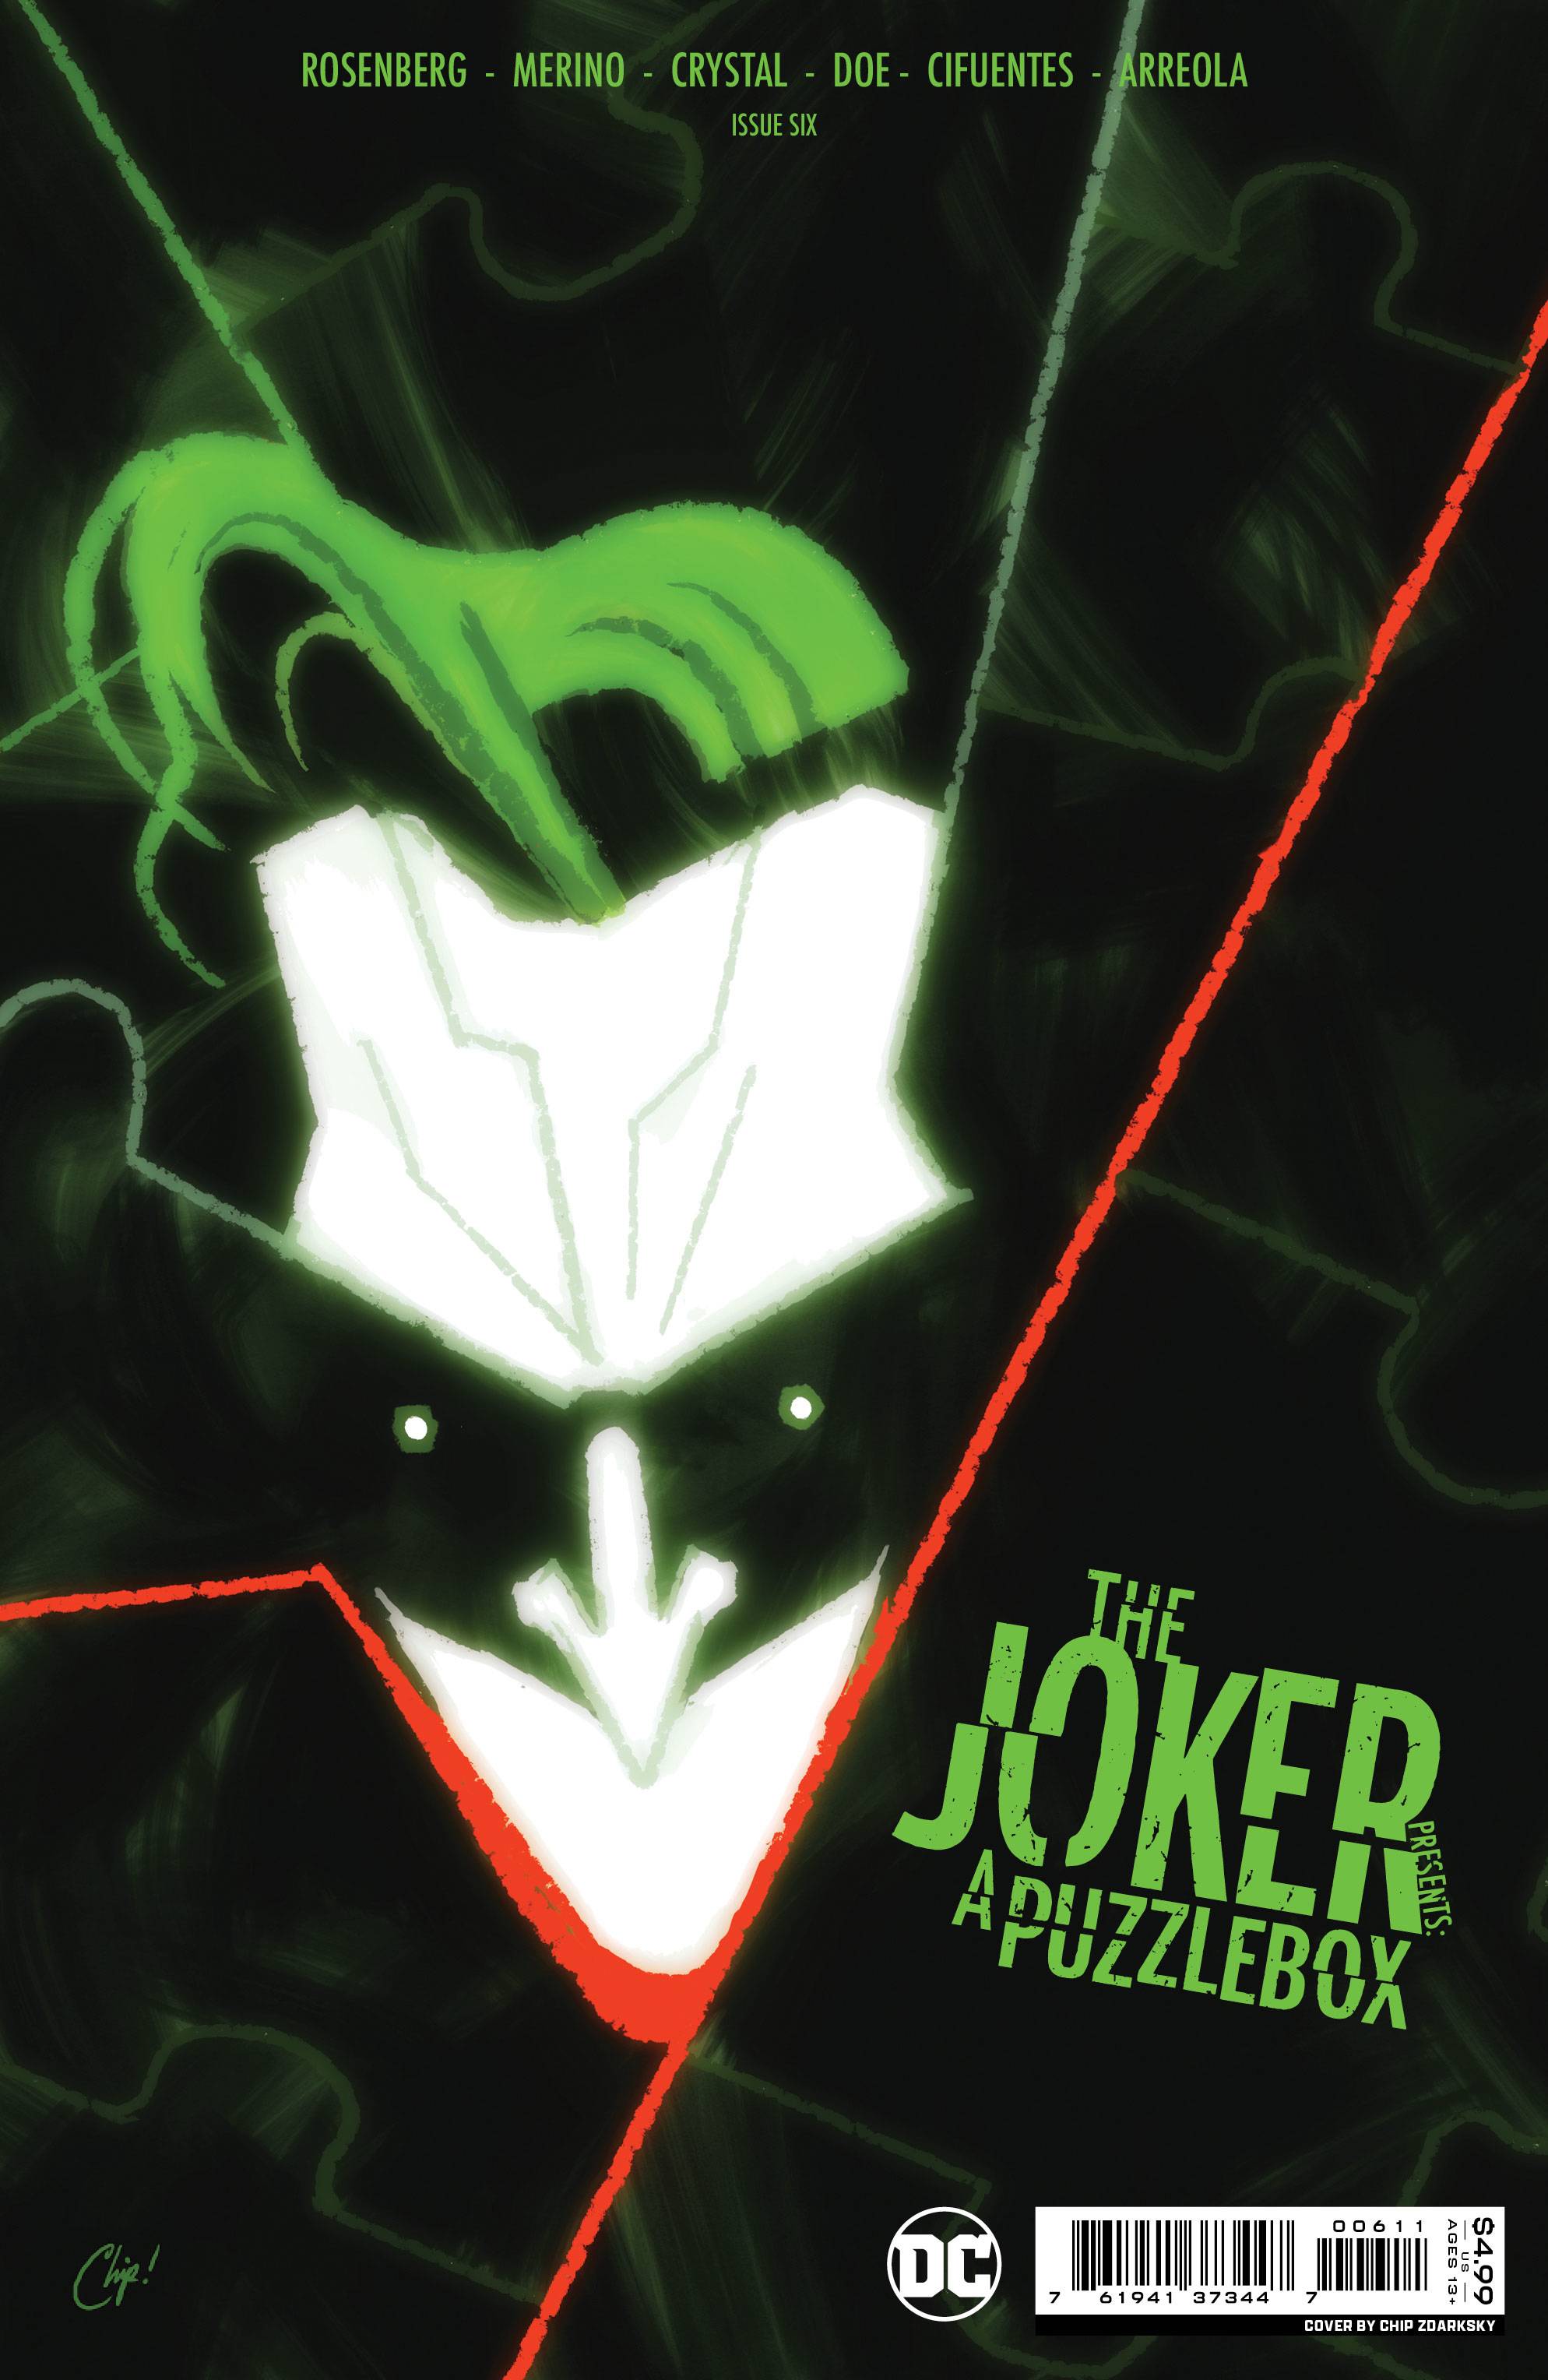 JOKER PRESENTS A PUZZLEBOX #6 (OF 7) CVR A ZDARSKY | L.A. Mood Comics and Games